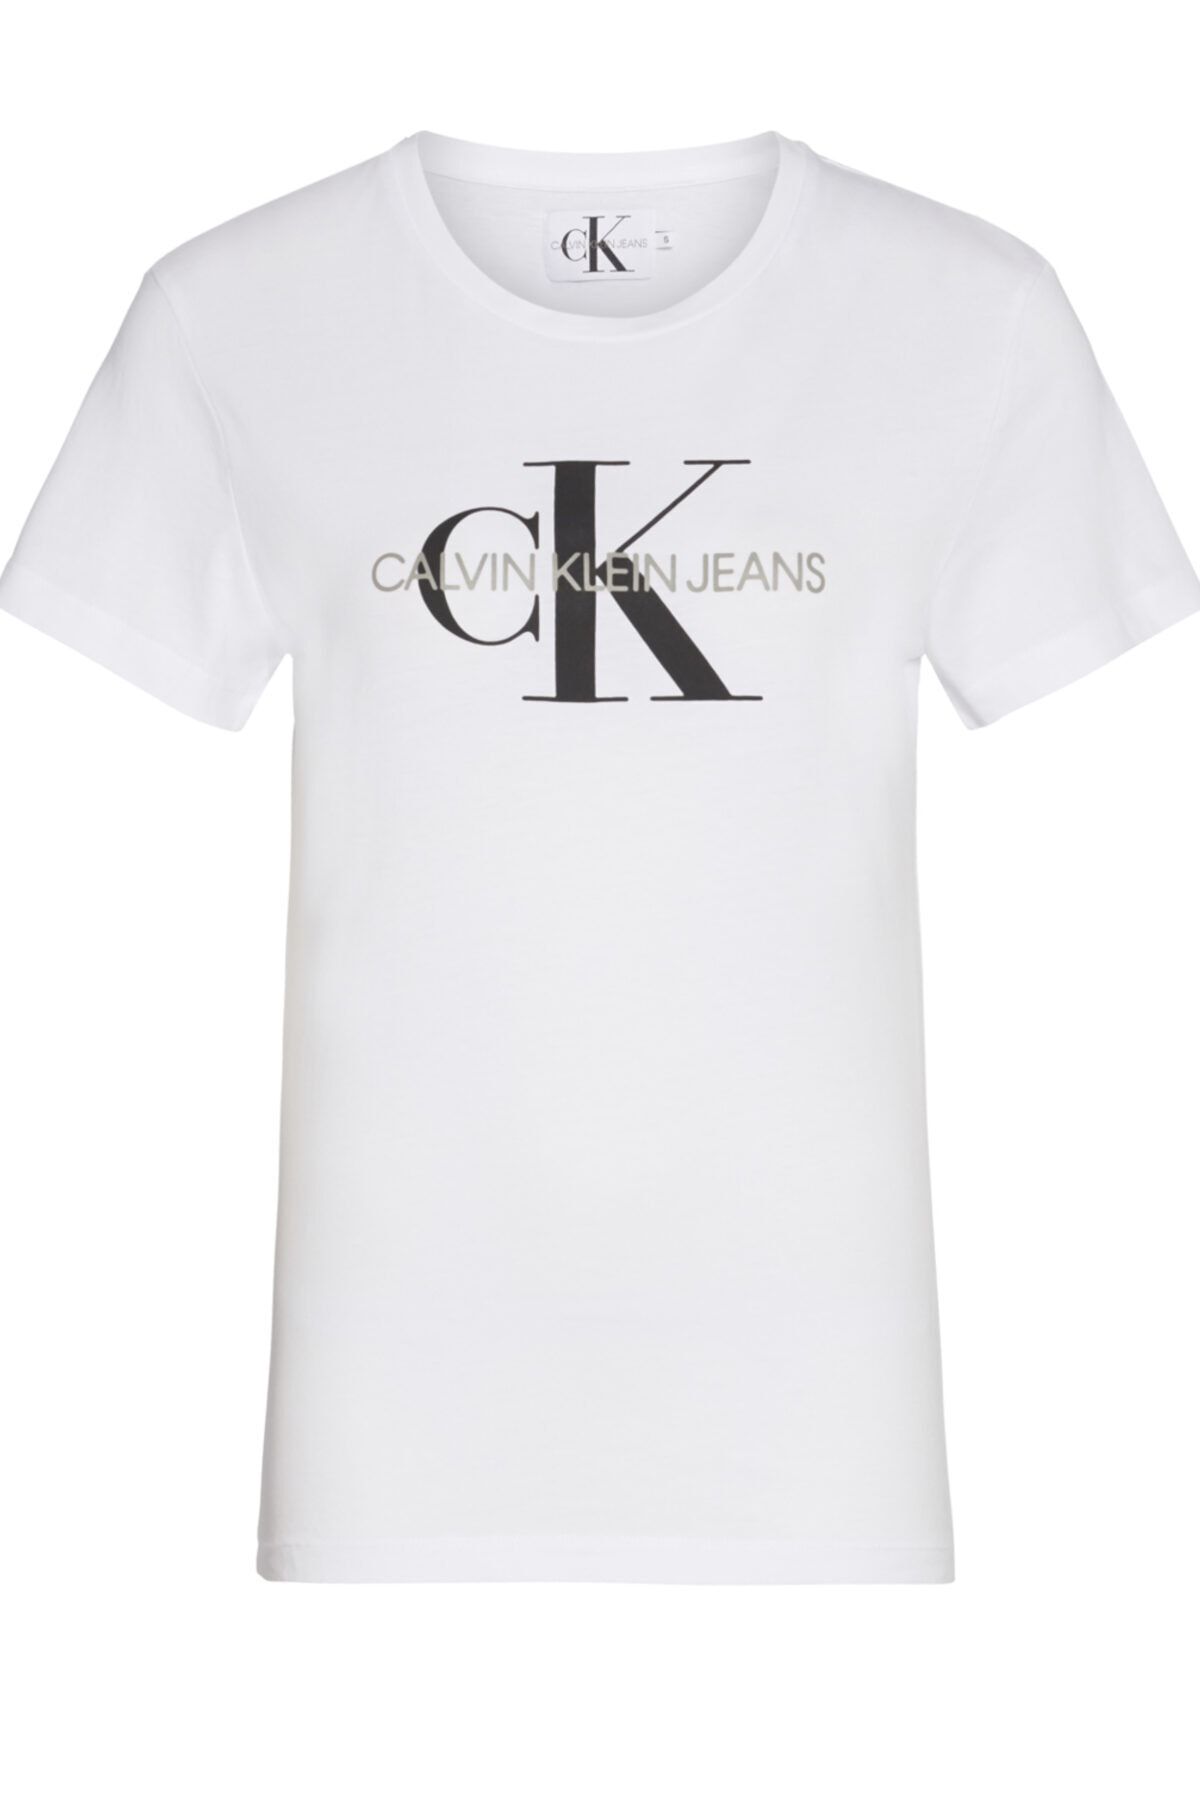 2023 Calvin Klein Tişört Modelleri ve Fiyatları - Trendyol